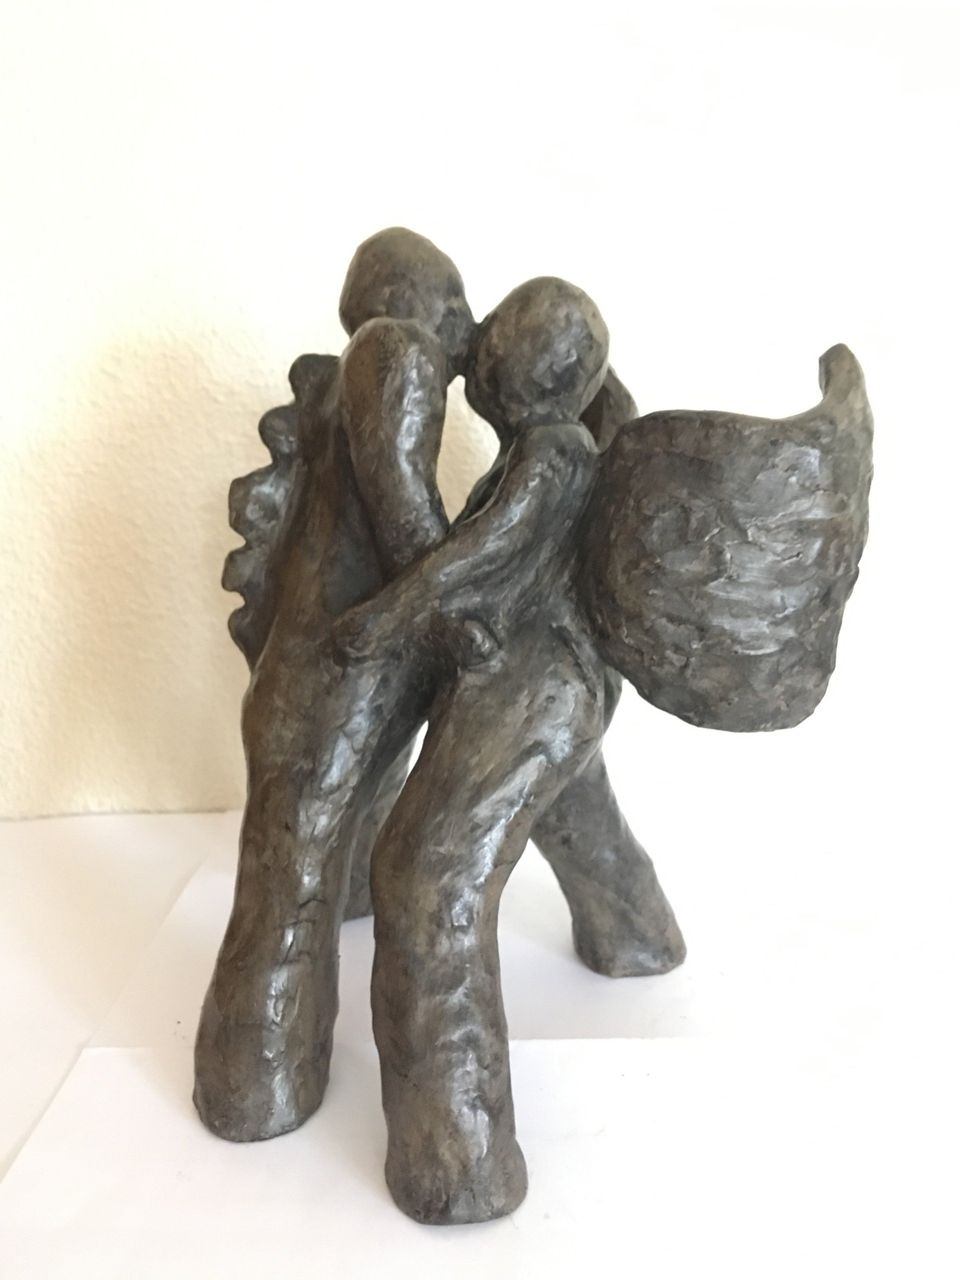 bronzen beeld Struggle, verbeelding van een gevecht tussen goed en kwaad, hoop en verdriet, jezelf en de omstandigheden. door kunstenaar Elisabeth Baron 